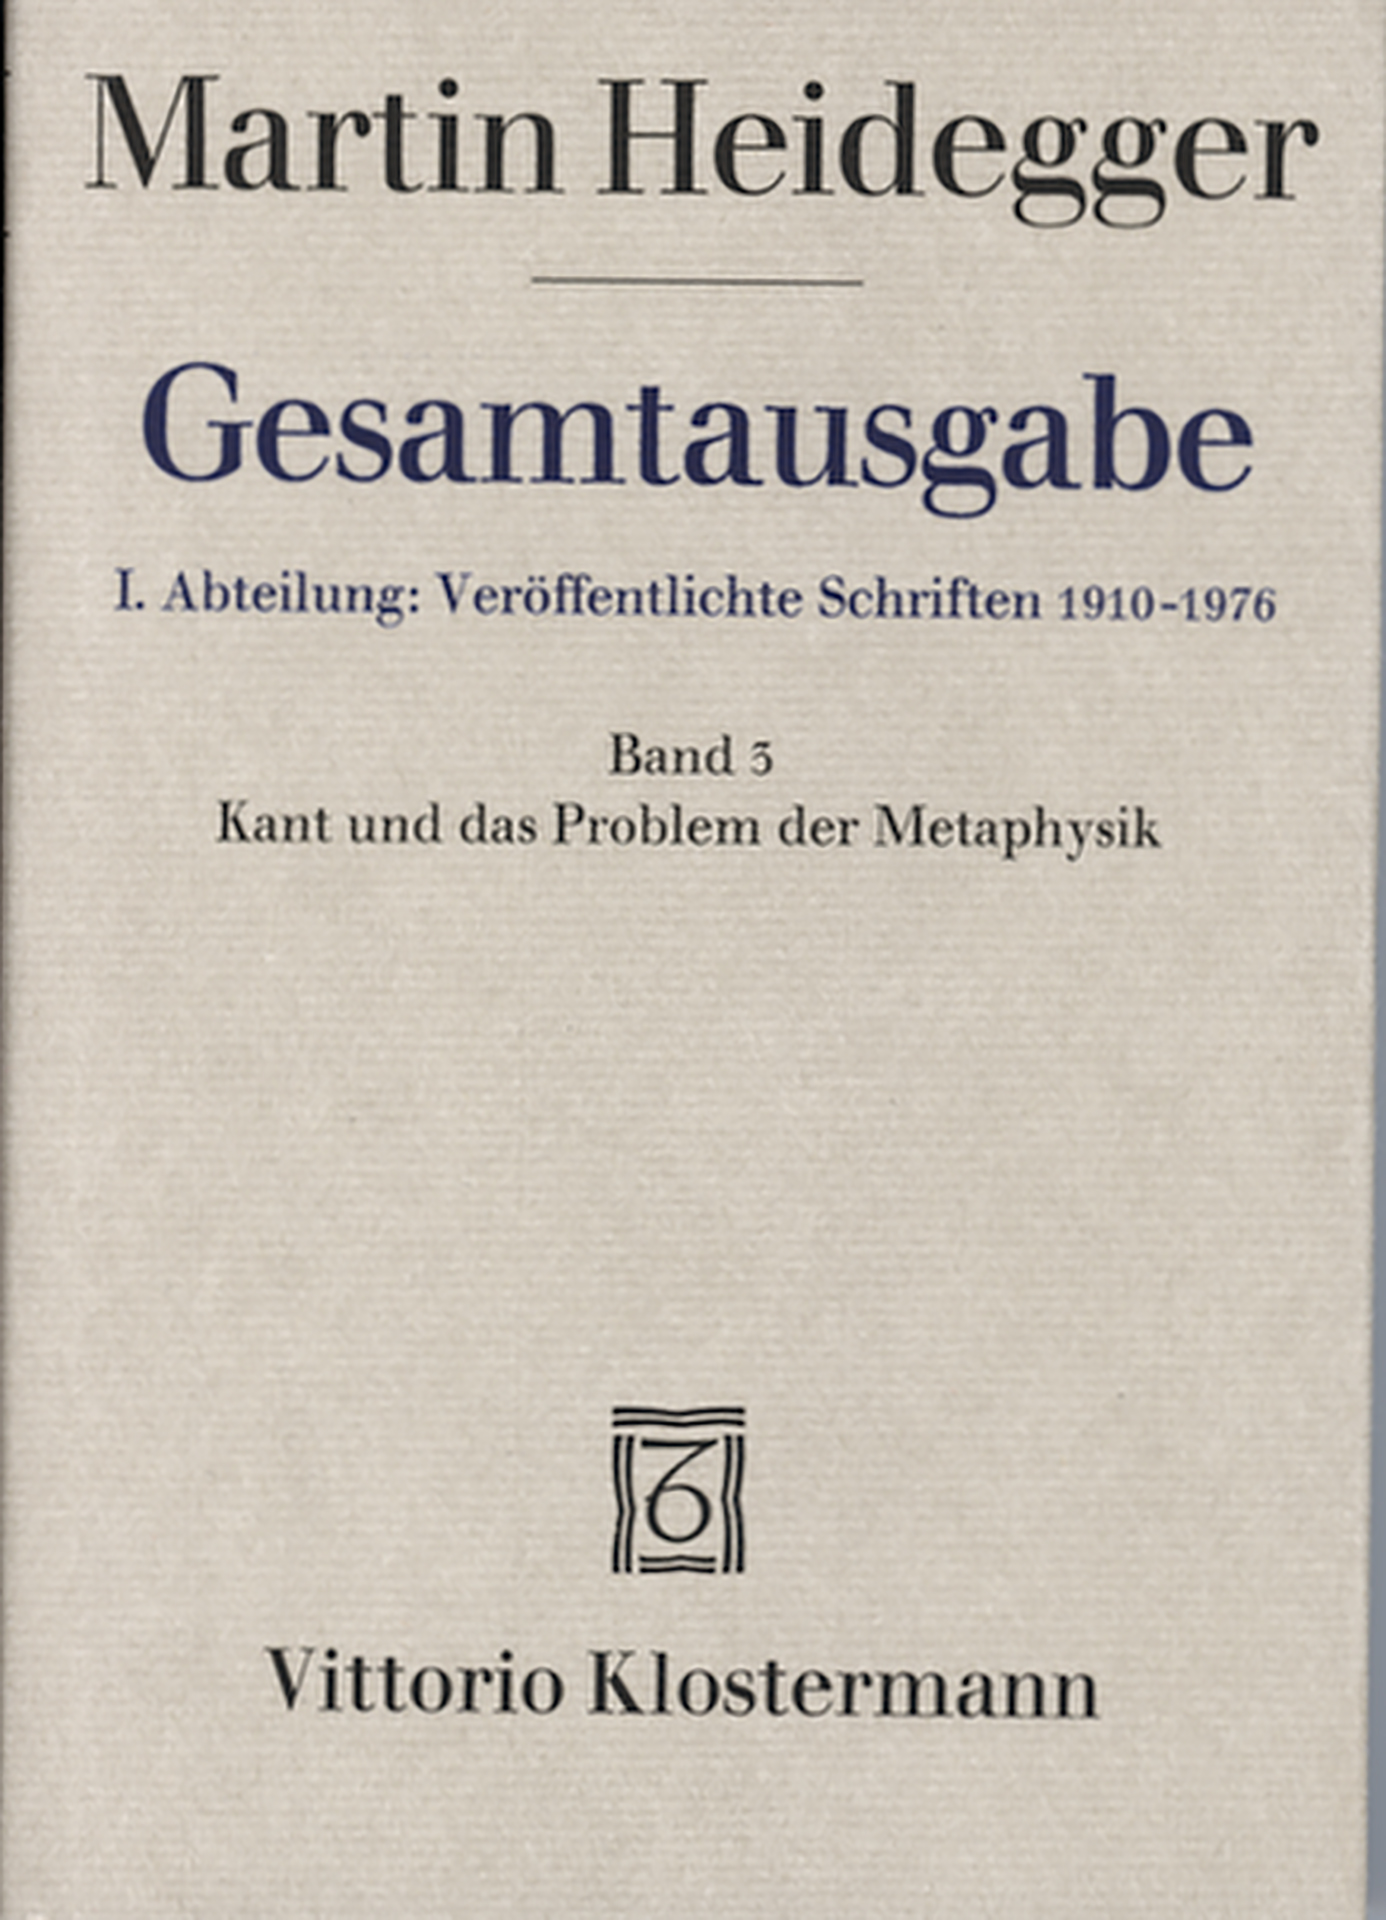 Kant und das Problem der Metaphysik - Band 3 (Martin Heidegger Gesamtausgabe) - Martin Heidegger